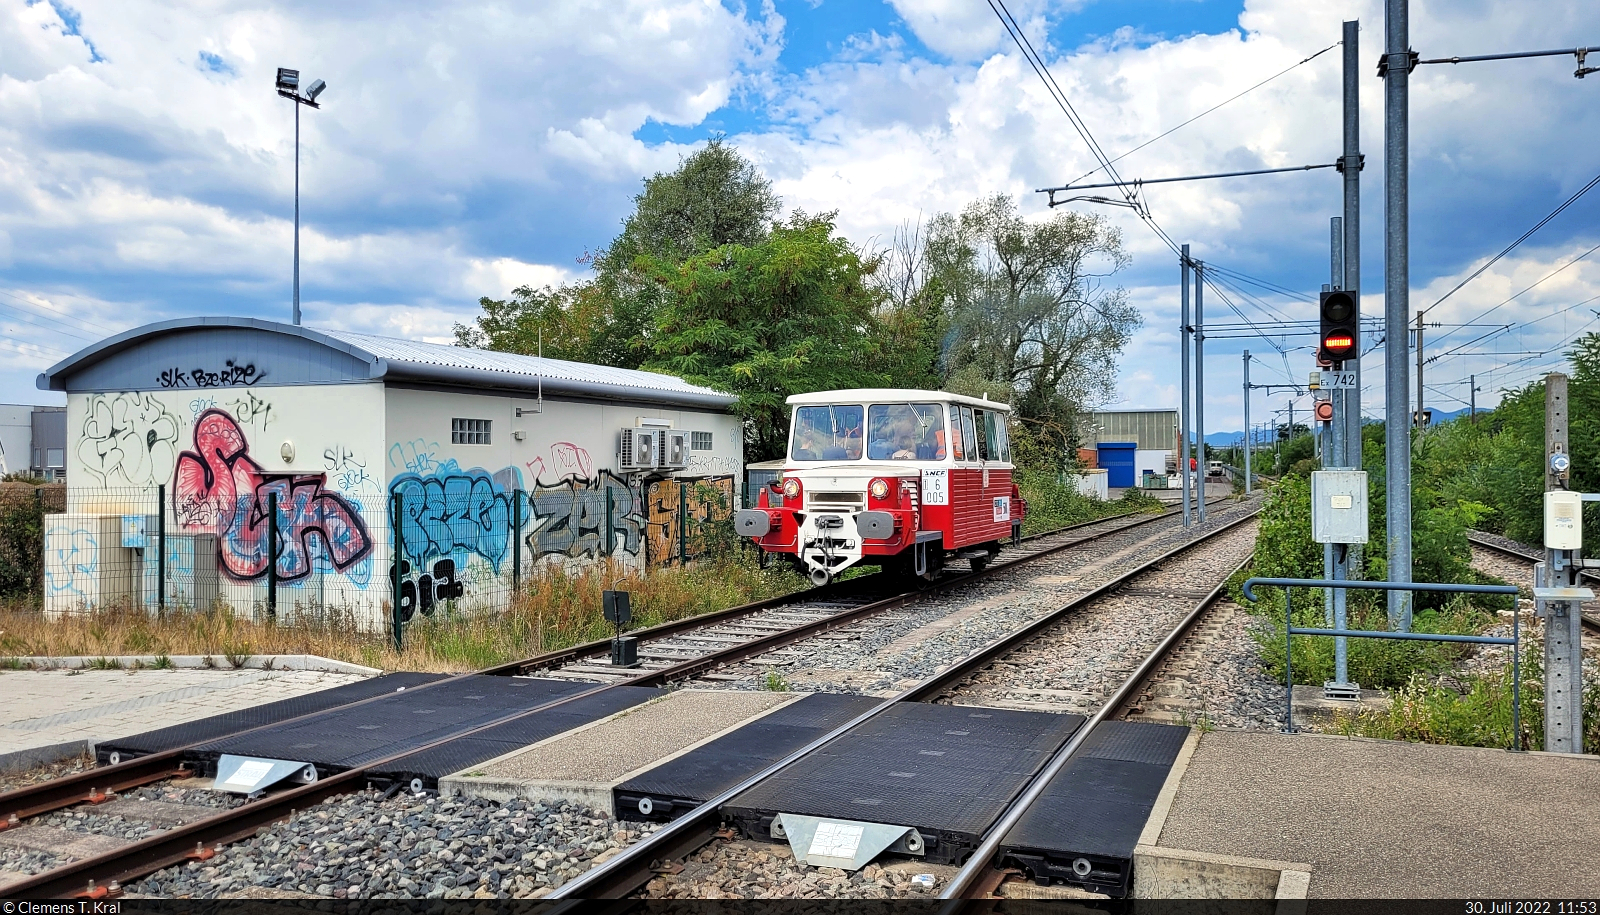 Zwischen dem Cité du Train (Eisenbahnmuseum) und der Straßenbahn-Haltestelle Mulhouse Musées pendelte der Einheitstriebwagen mit Kran vom Typ DU 65 n ° 6 005 (Baujahr 1965).

🧰 Cité du Train - Patrimoine SNCF
🕓 30.7.2022 | 11:53 Uhr